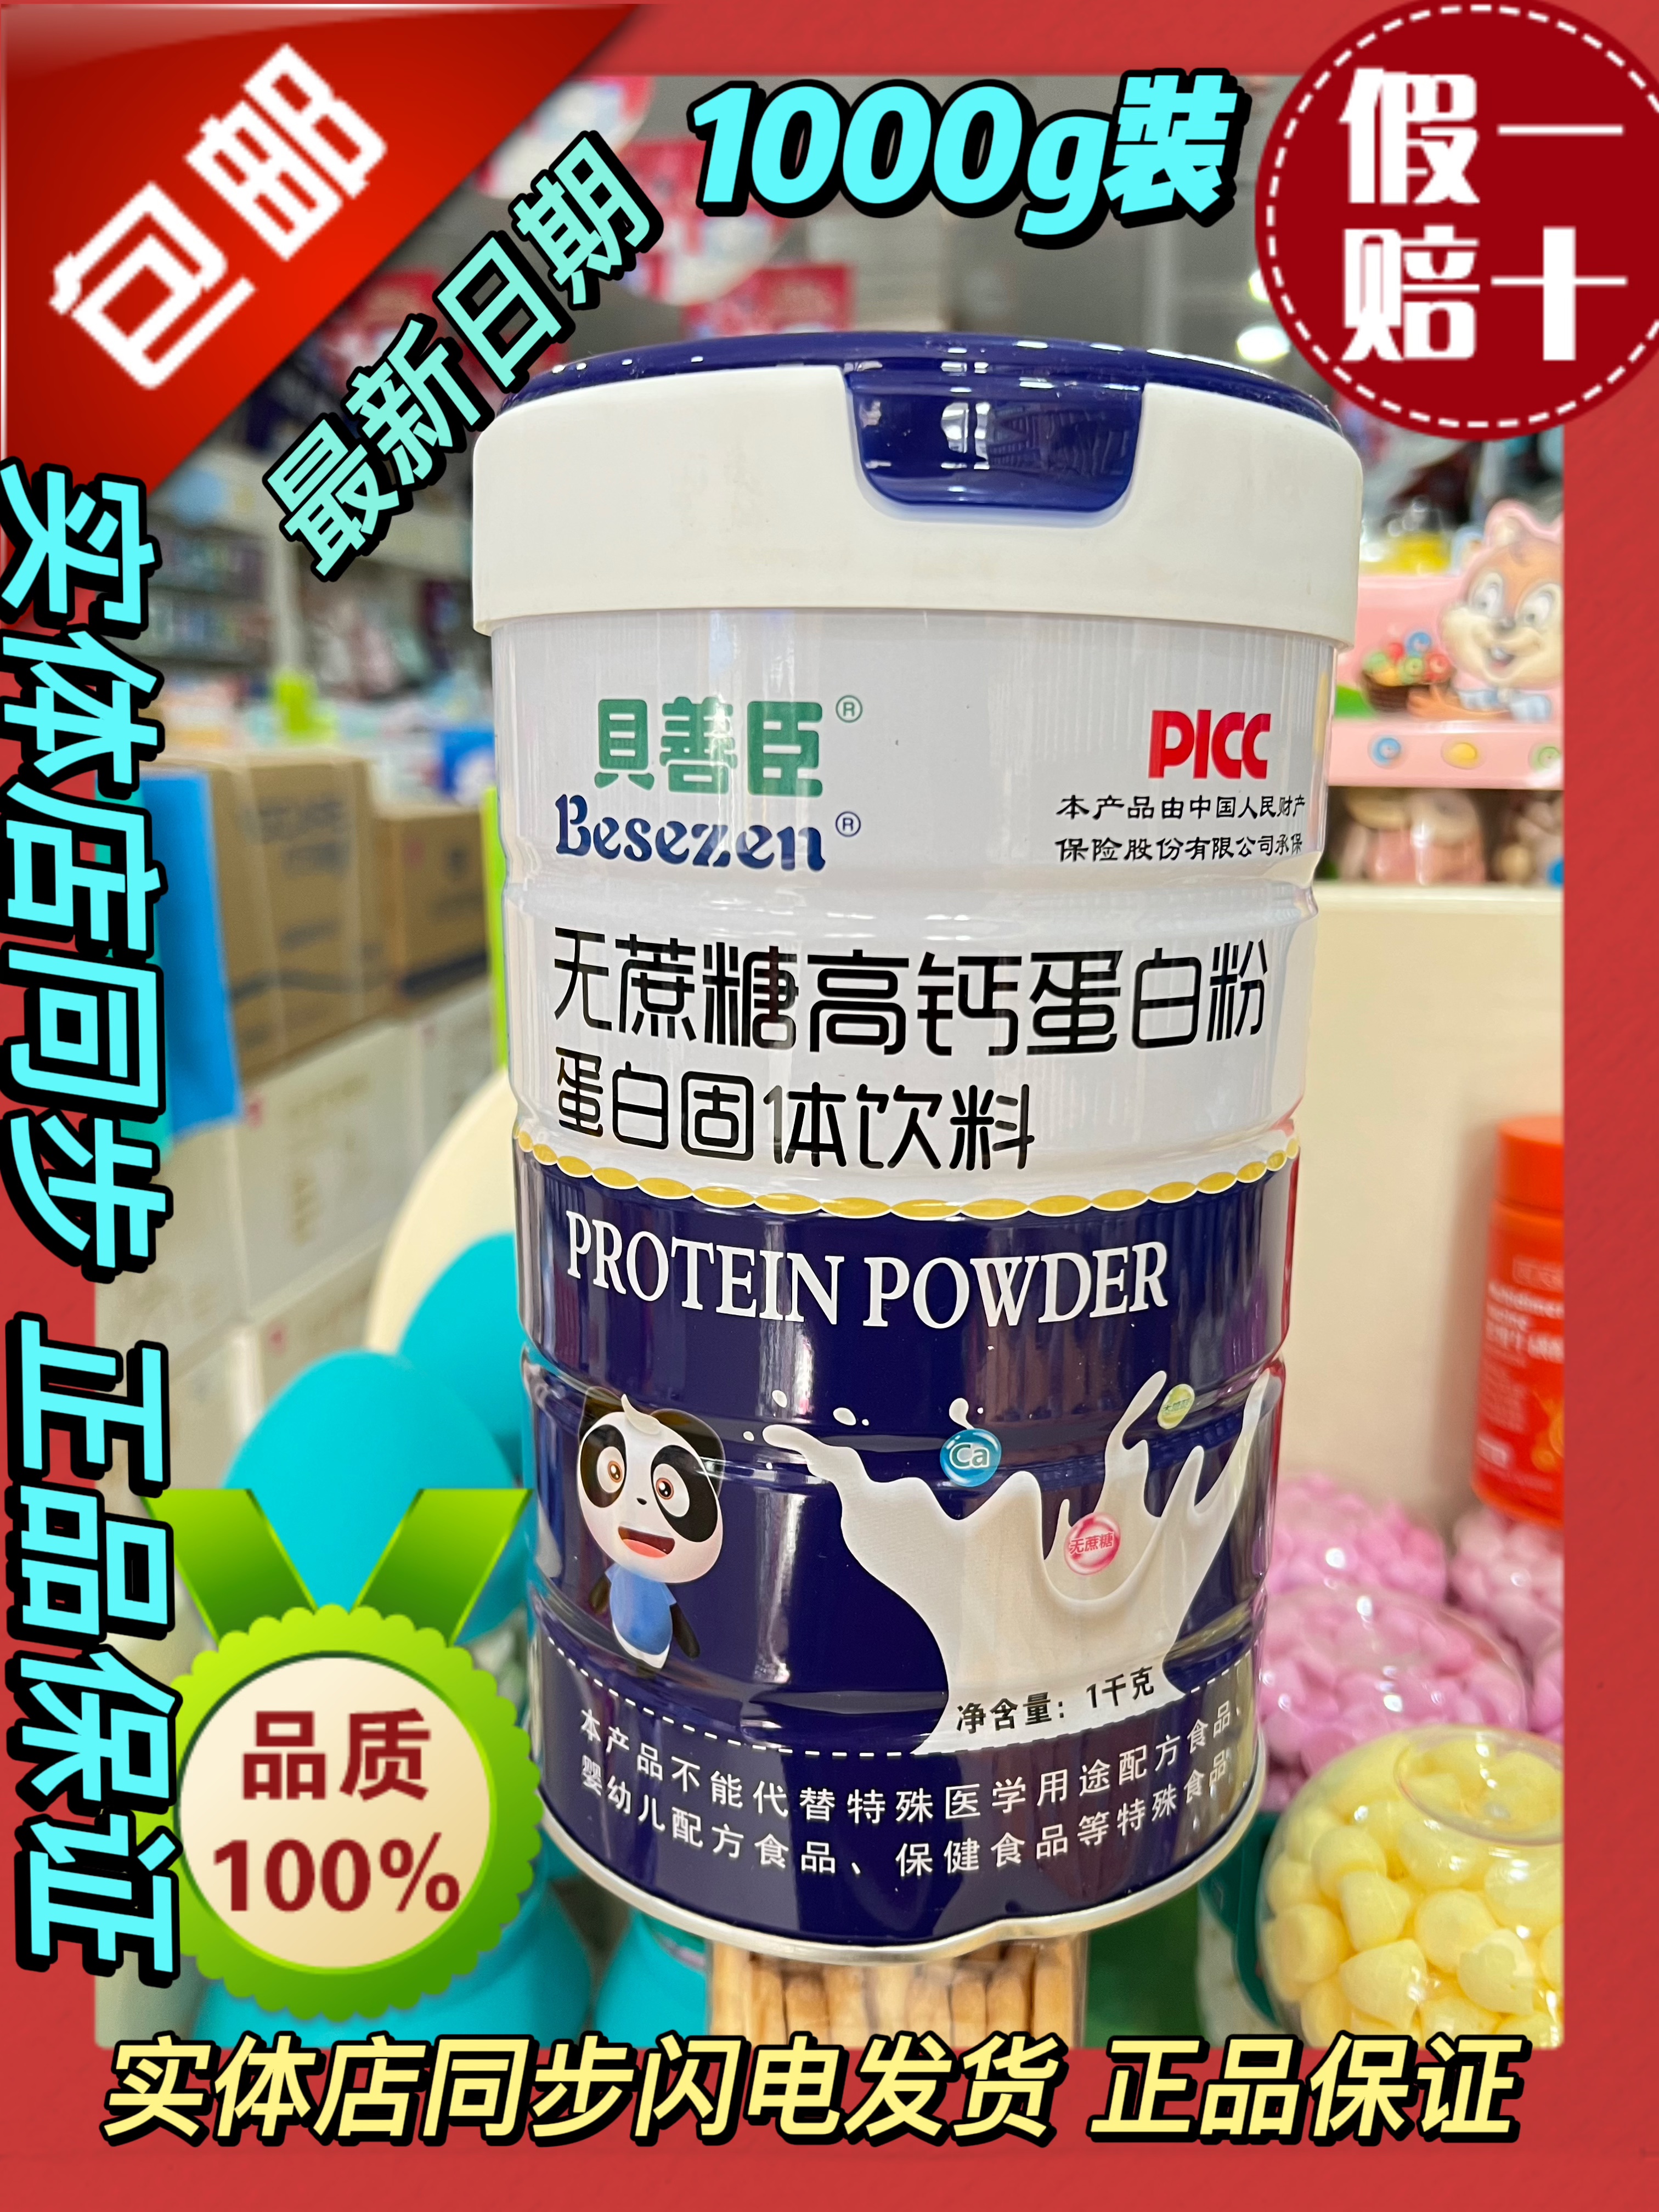 贝善臣无蔗糖蛋白质粉1000g【2罐】钙铁锌蛋白质粉 儿童学生共享